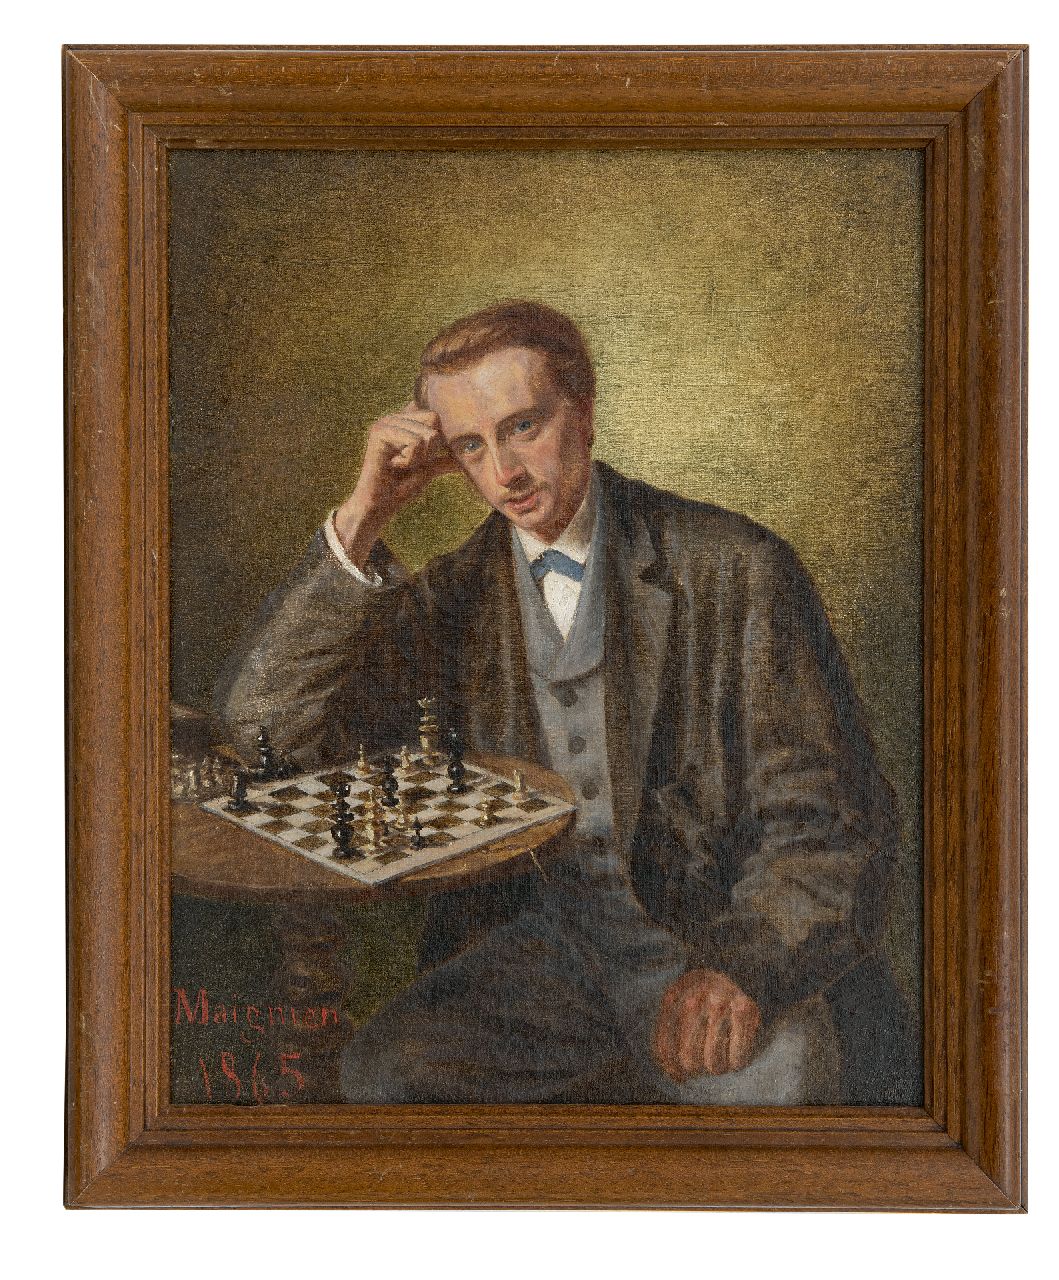 Maignien   | Maignien | Schilderijen te koop aangeboden | De schaker (schaak), olieverf op doek op paneel 30,5 x 24,2 cm, gesigneerd linksonder en gedateerd 1865